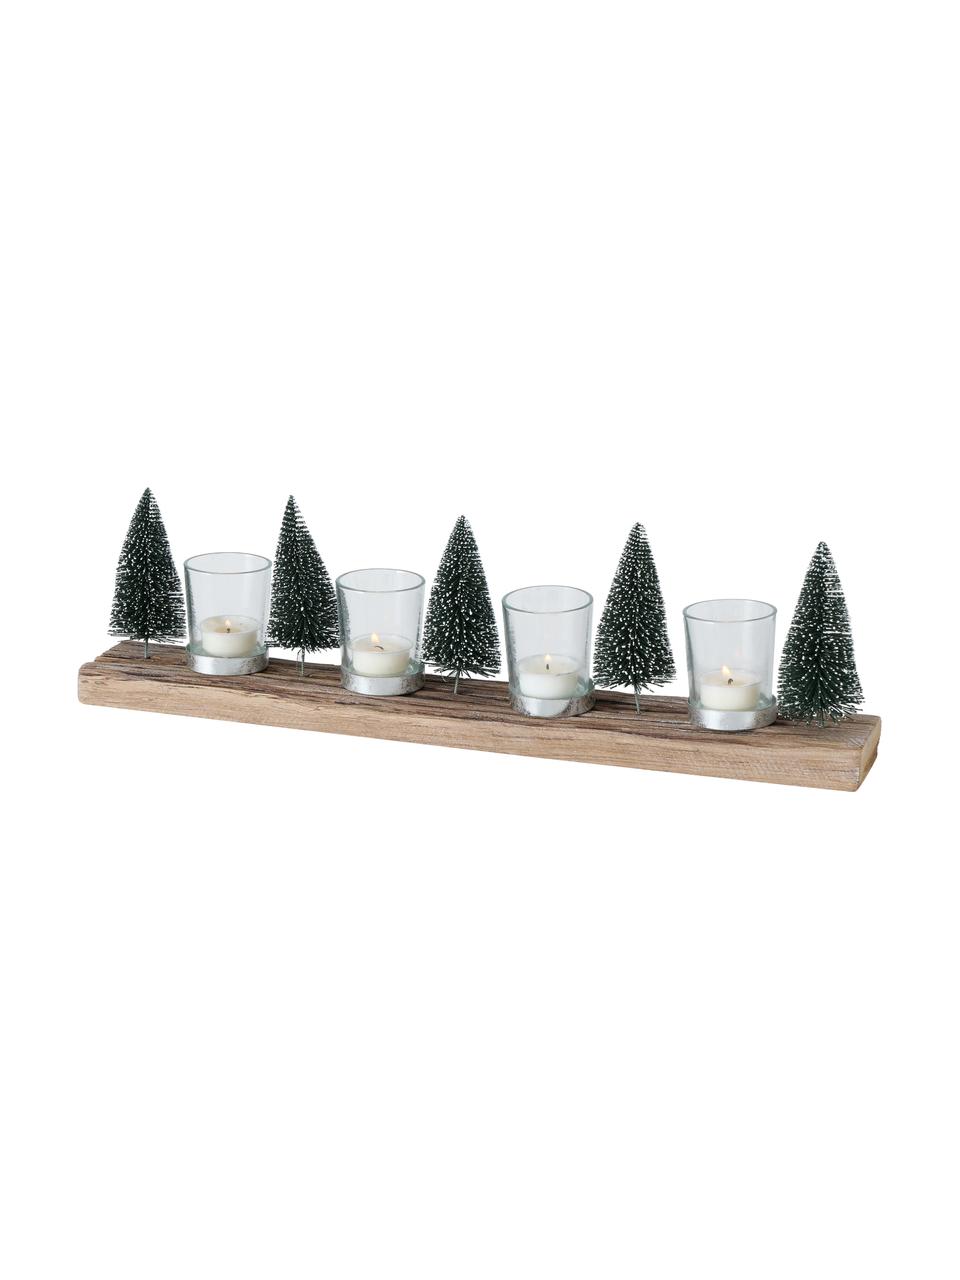 Teelichthalter-Set Tarvino, 5-tlg., Sockel: Holz, Dekor: Kunststoff, Metall, Grün, Braun, B 7 x H 15 cm